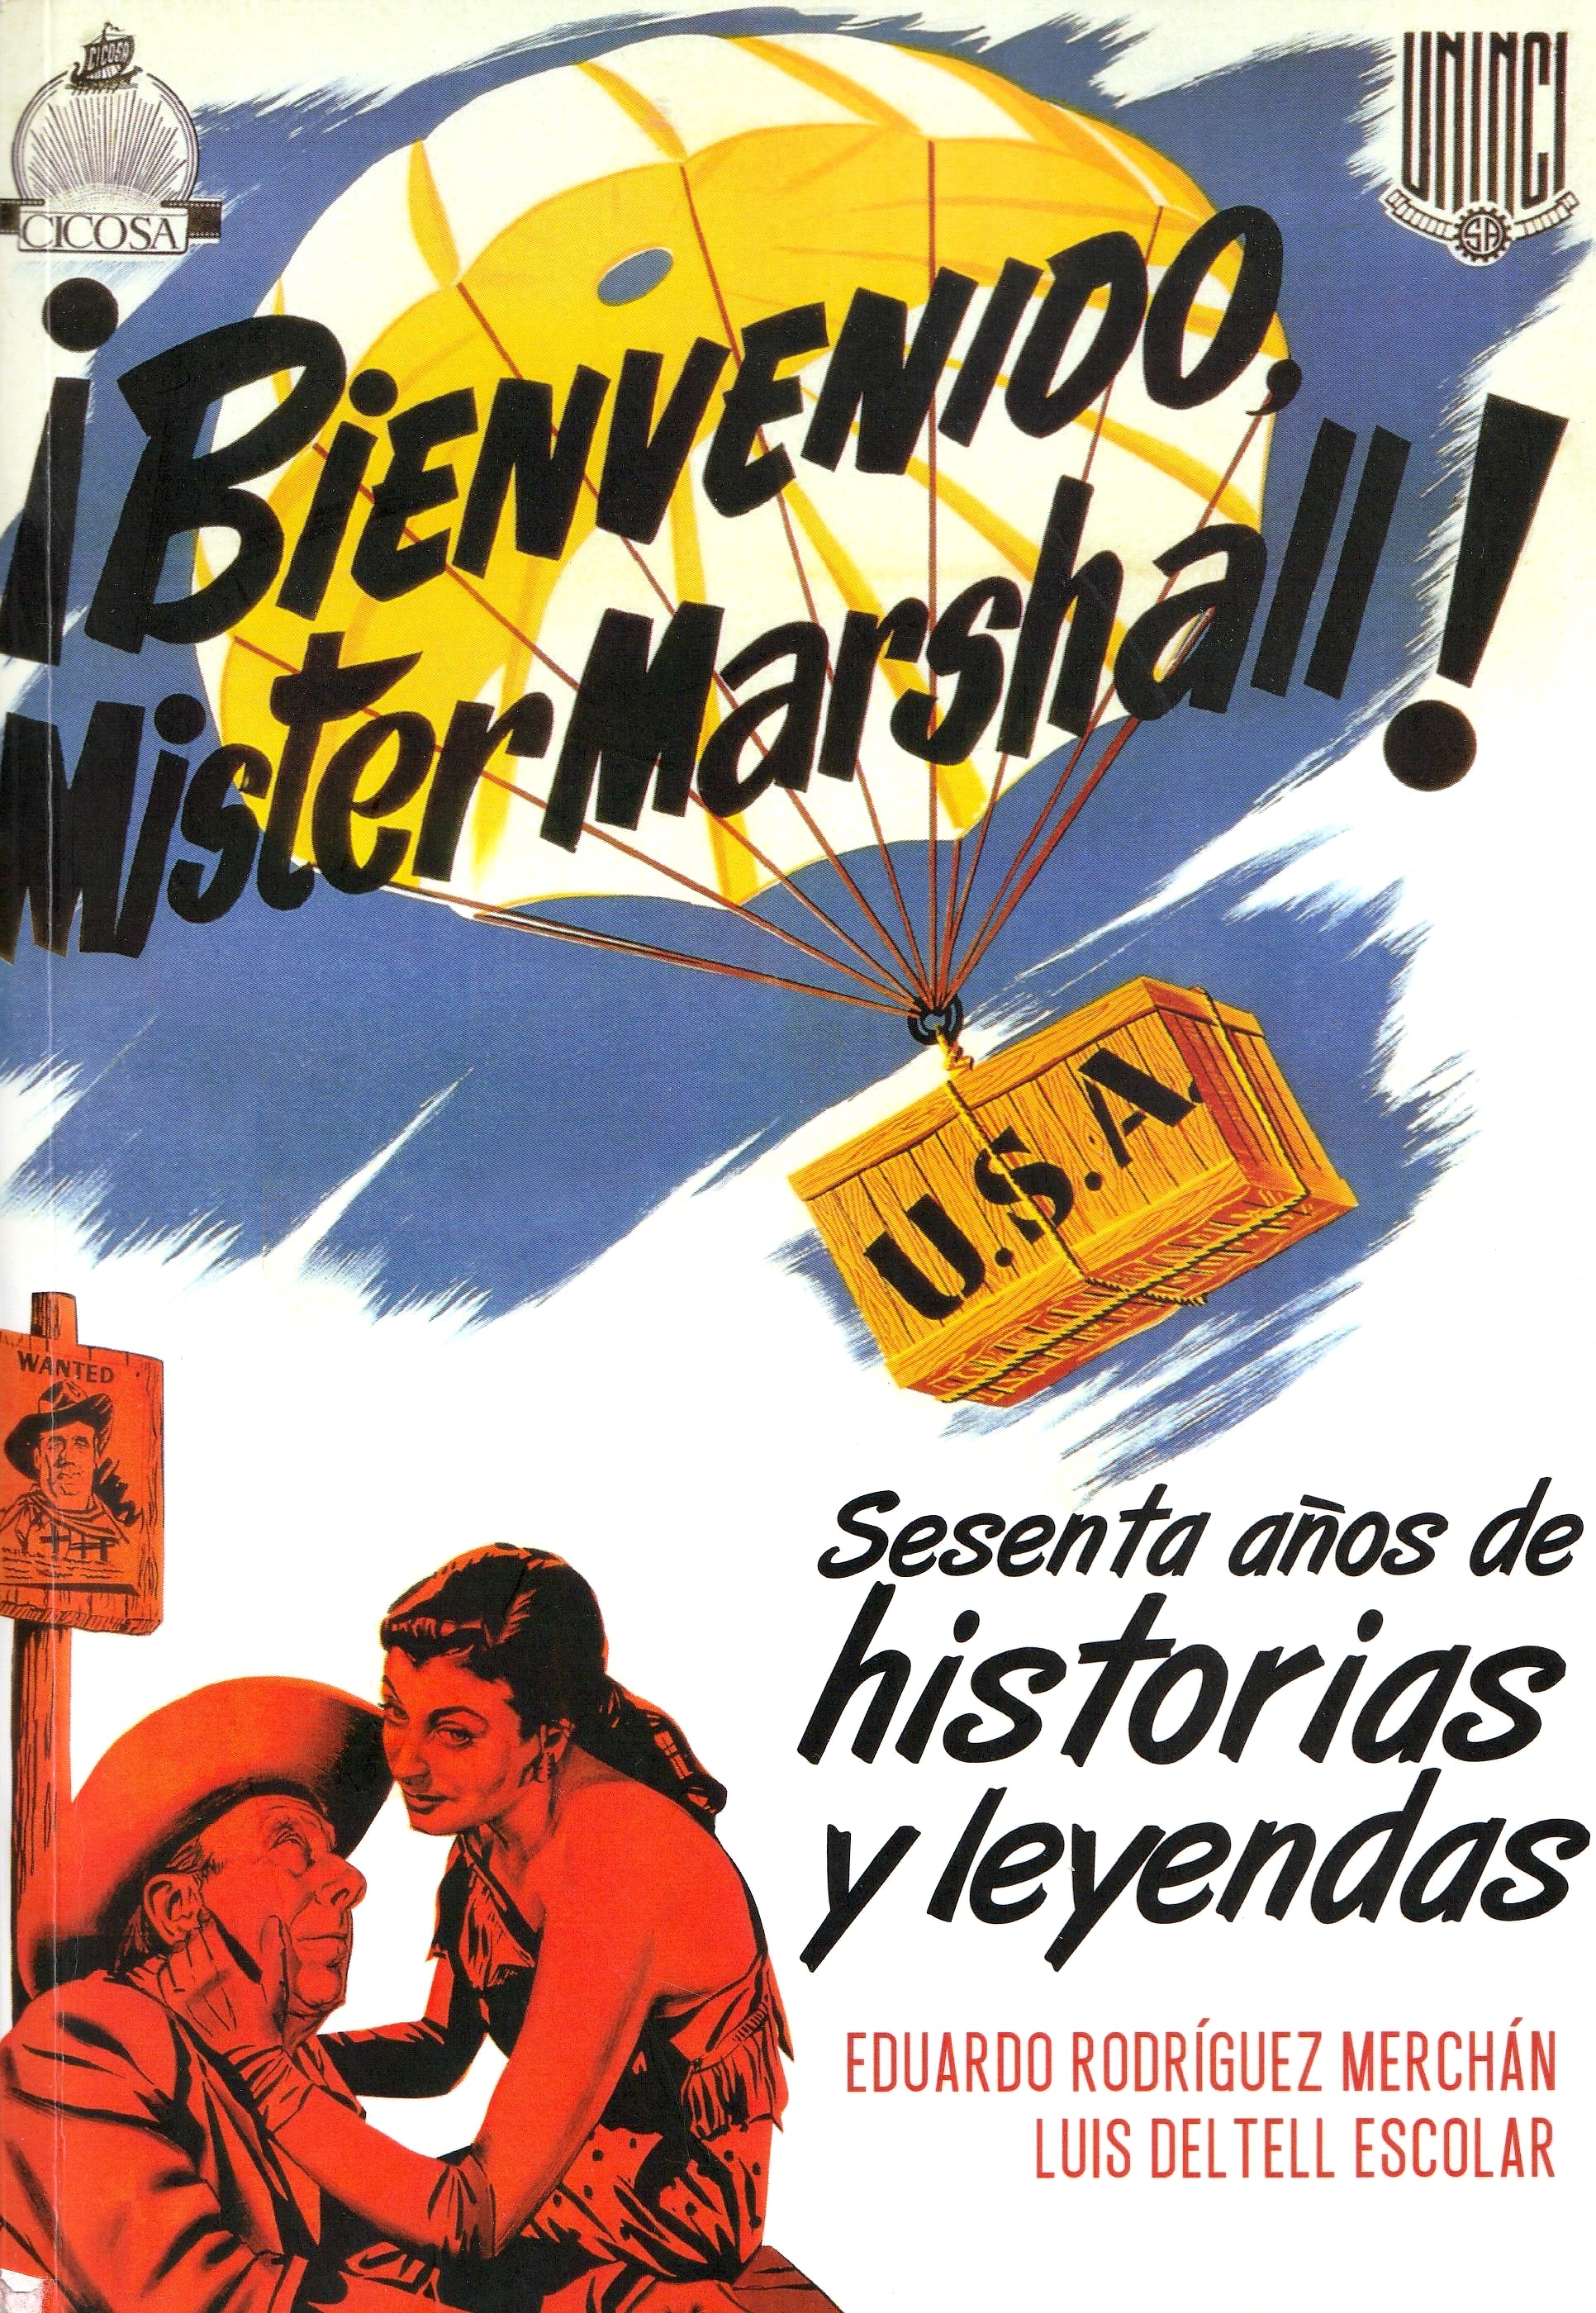 Imagen de portada del libro ¡Bienvenido Mister Marshall!